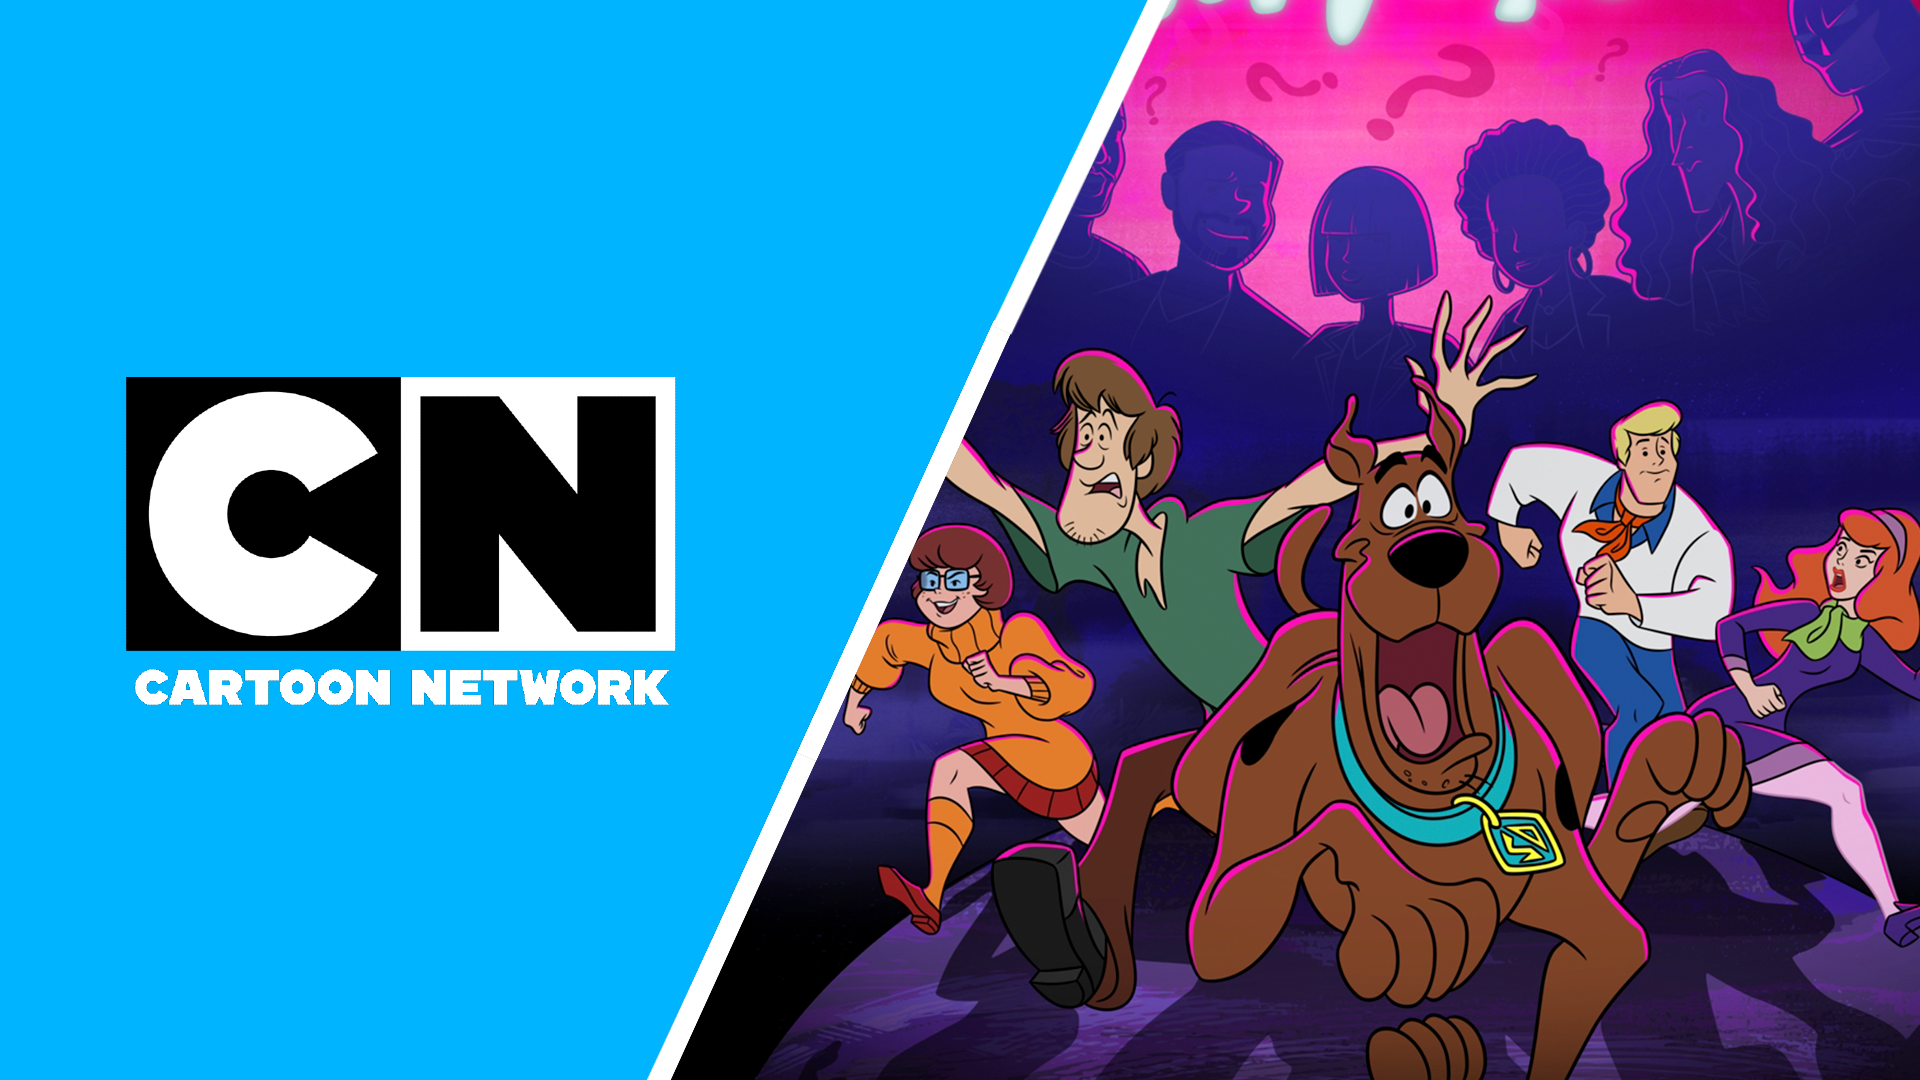 Extinção Alienígena: Episódio final de Ben 10 chega em outubro ao Cartoon  Network e HBO Max - TVLaint Brasil